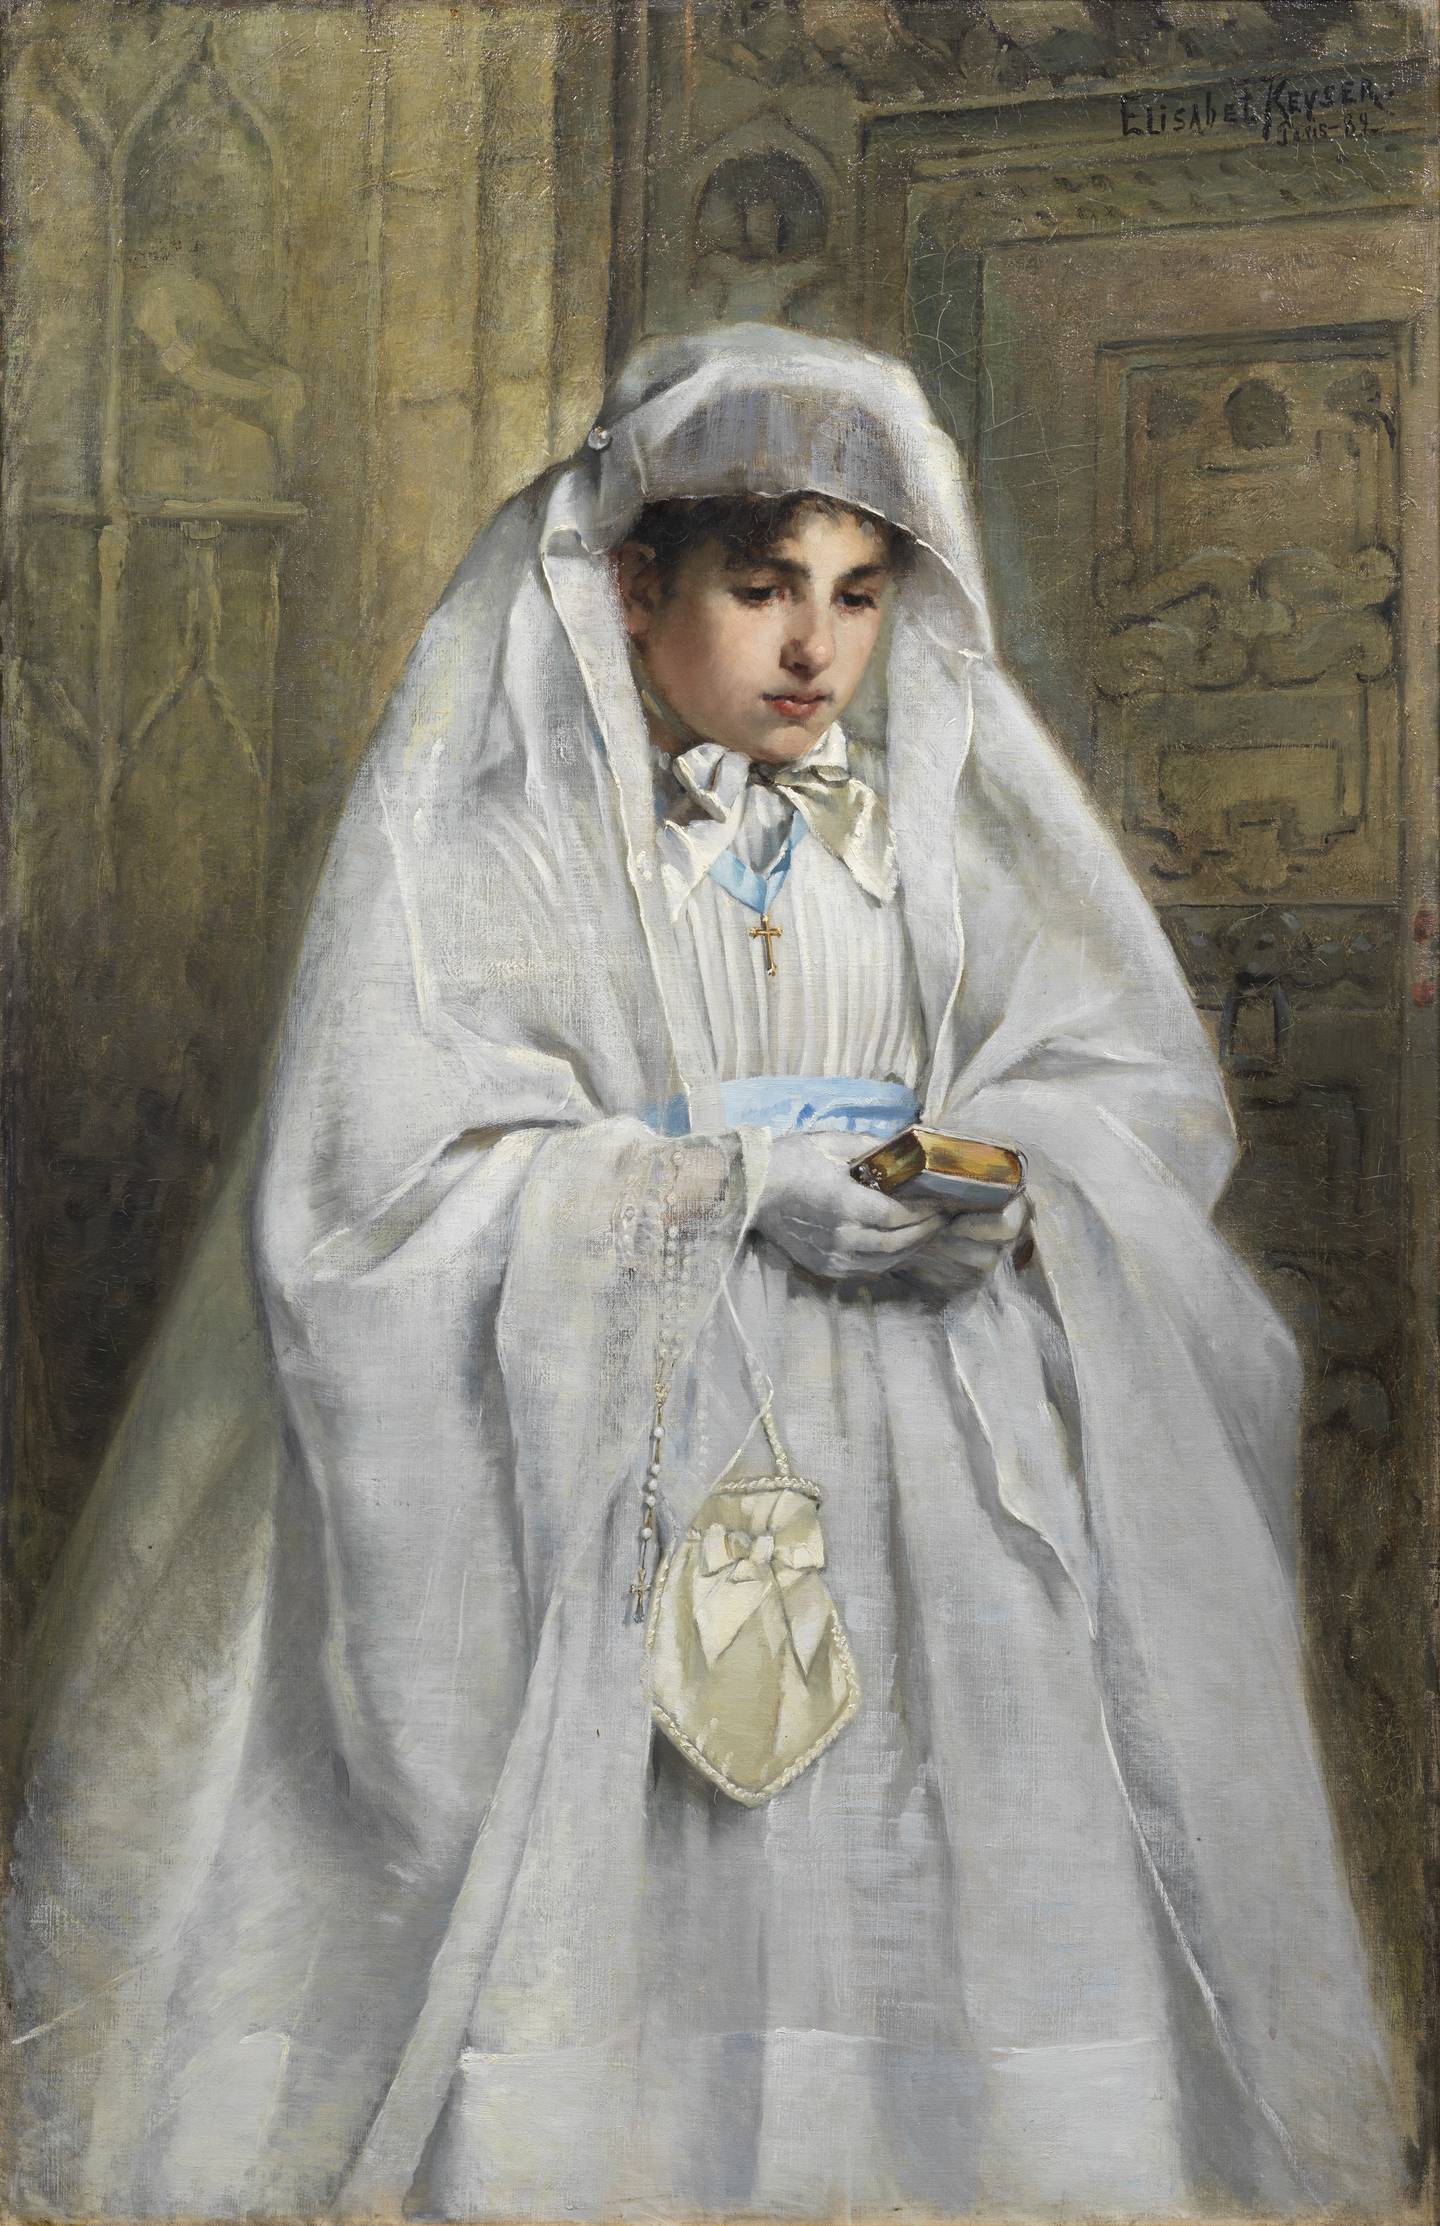 Elisabeth Keyser, En konfirmand i Normandie, Sign. 1889, Olja på duk, NM 7478